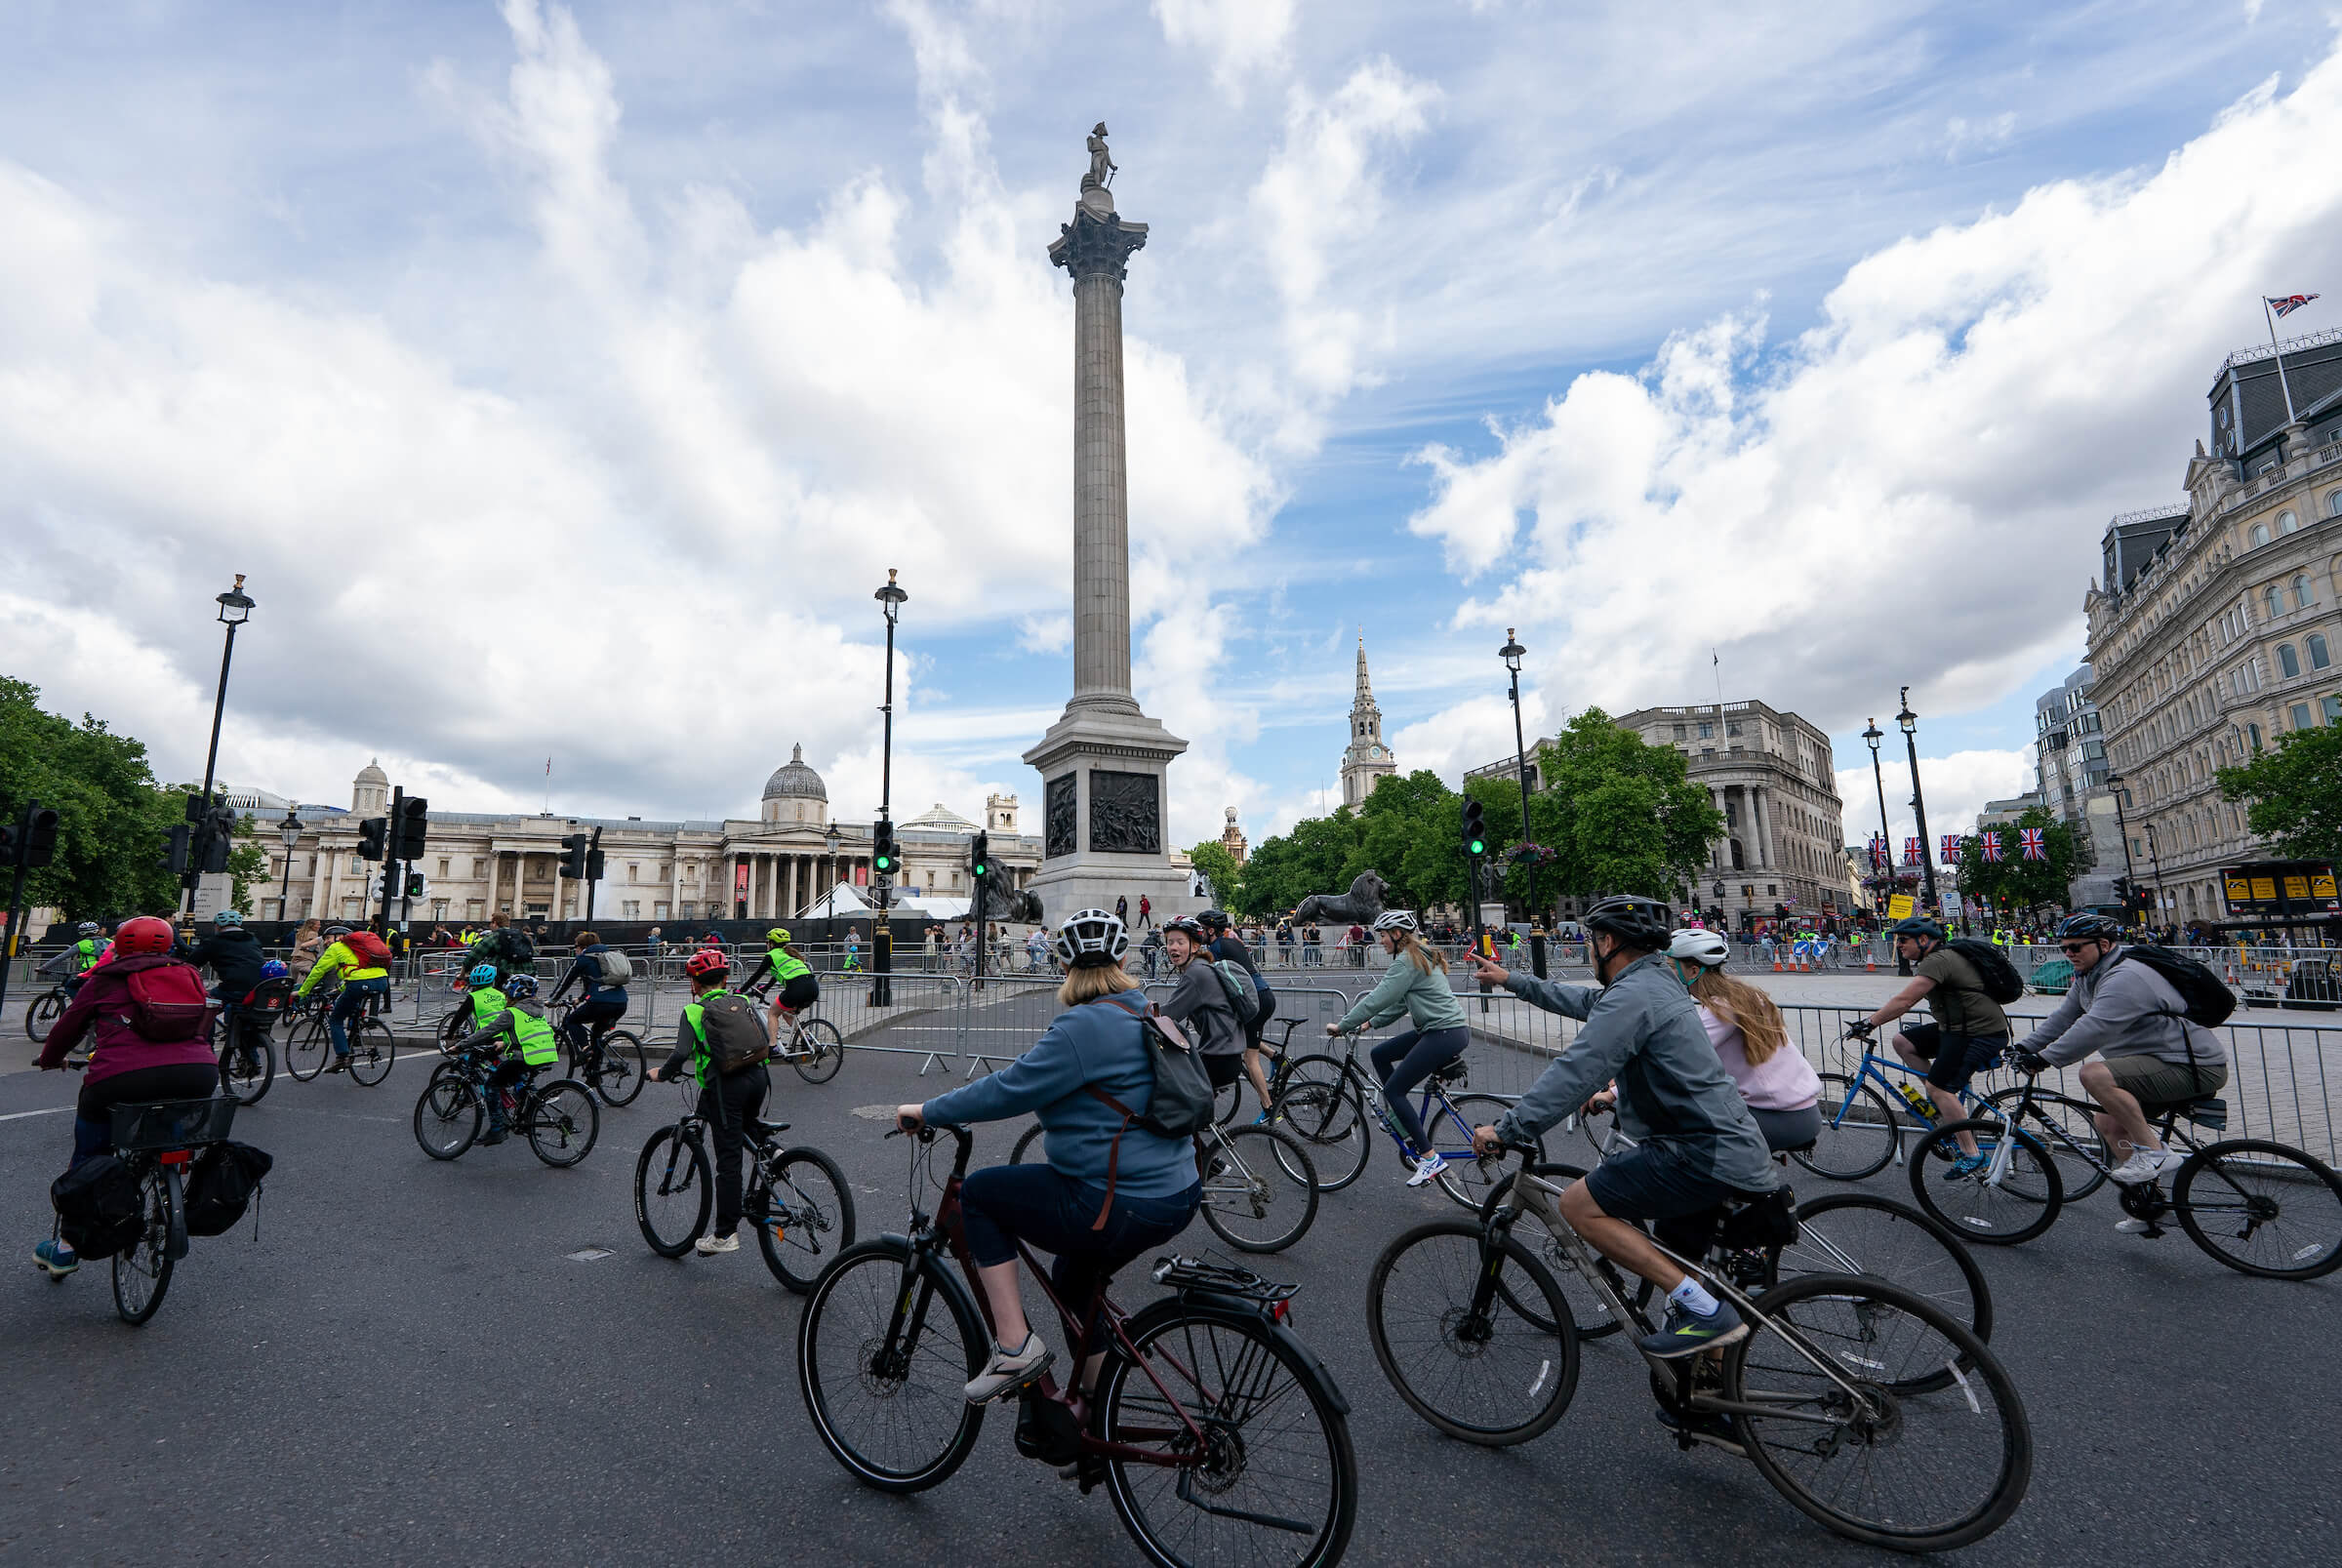 A group of riders at Trafalgar Square